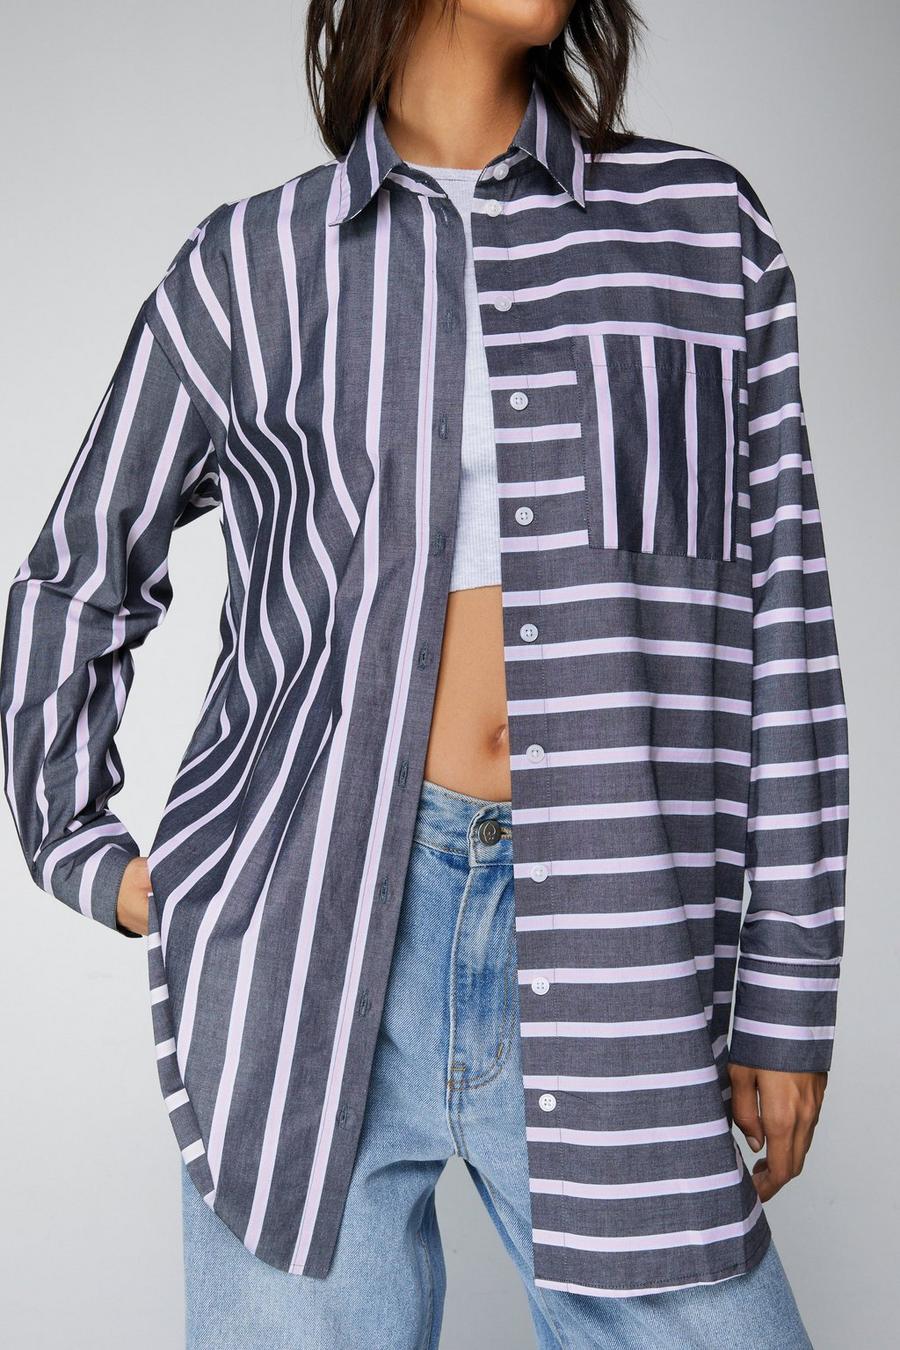 Stripe Longline Button Down Shirt